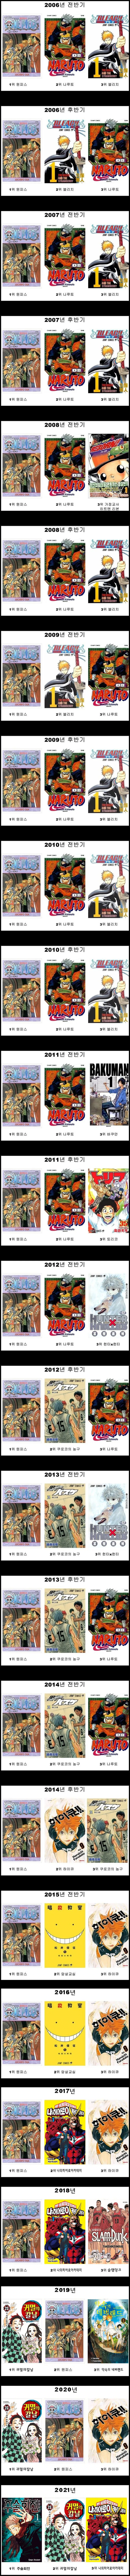 일본 주간소년점프 년도별 만화 판매량 순위정보 2005~2021년 정보